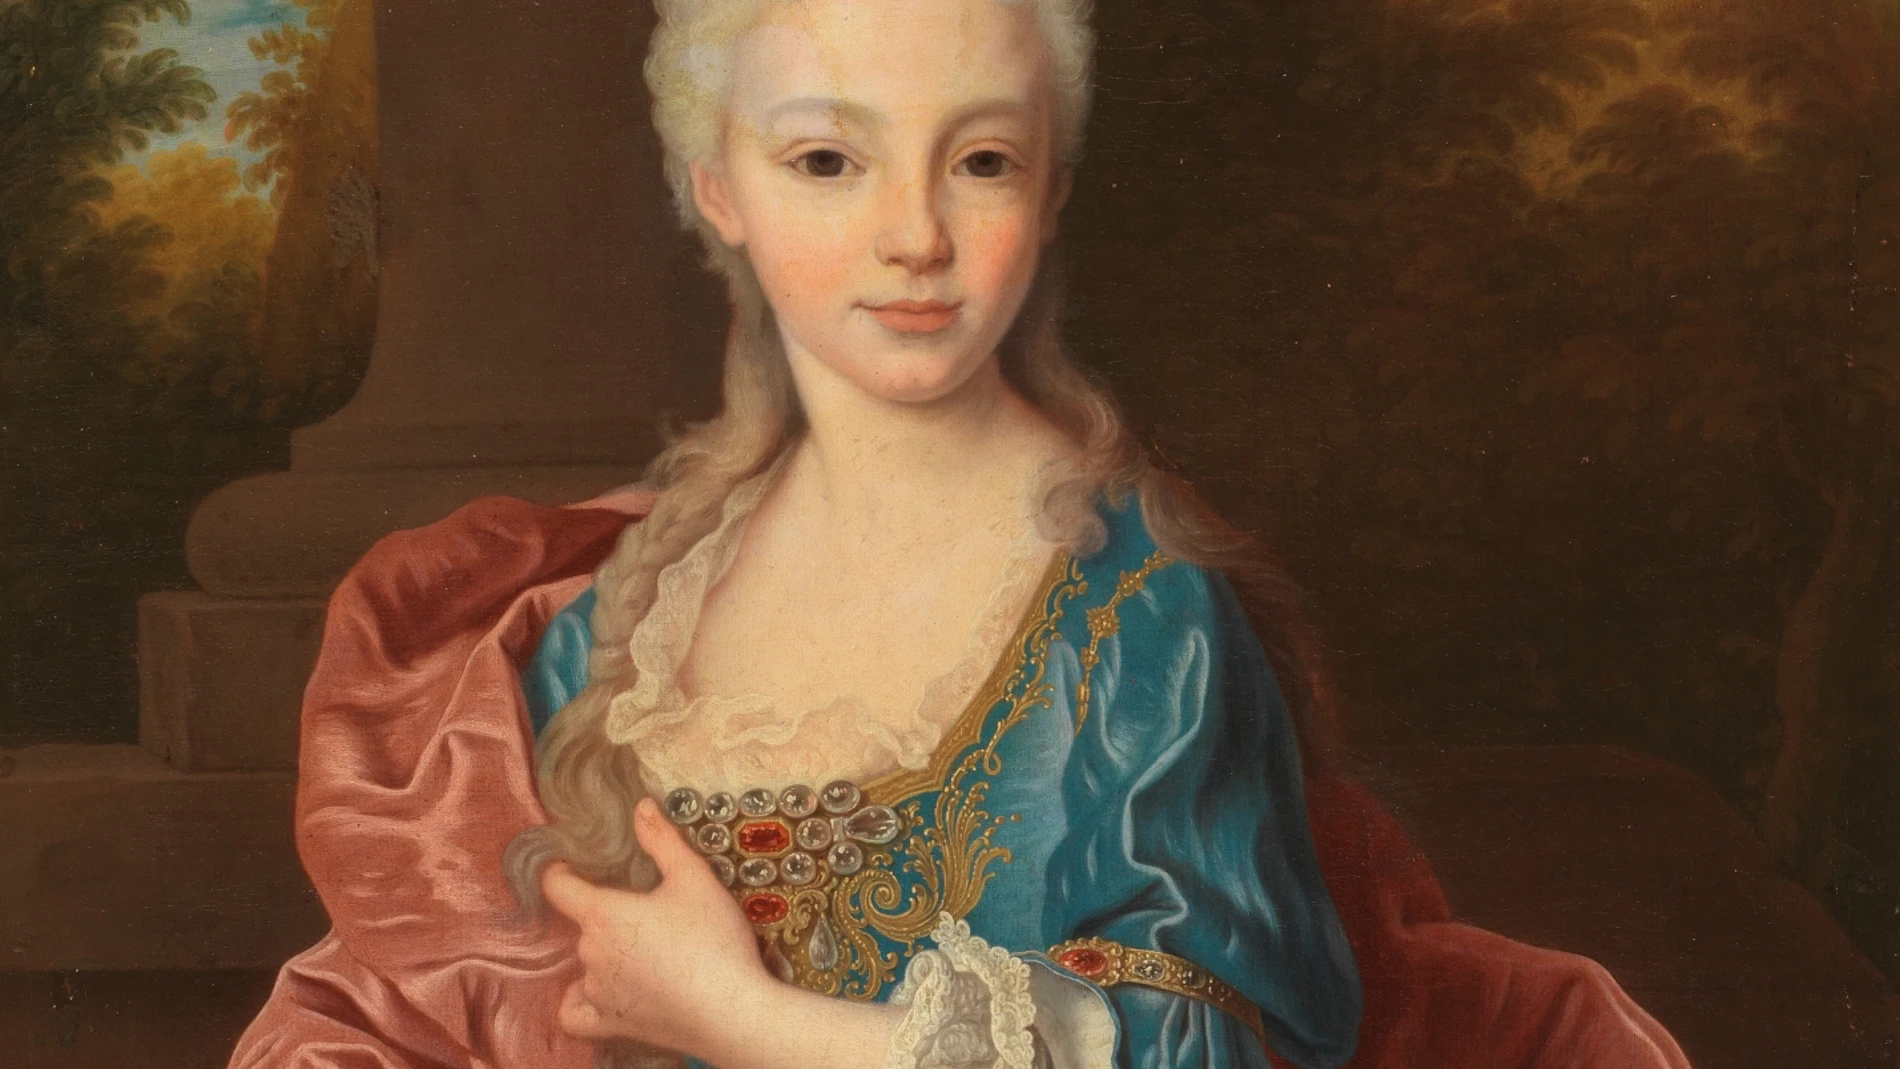 Óleo sobre lienzo «María Ana Victoria de Borbón», del retratista francés Jean Ranc